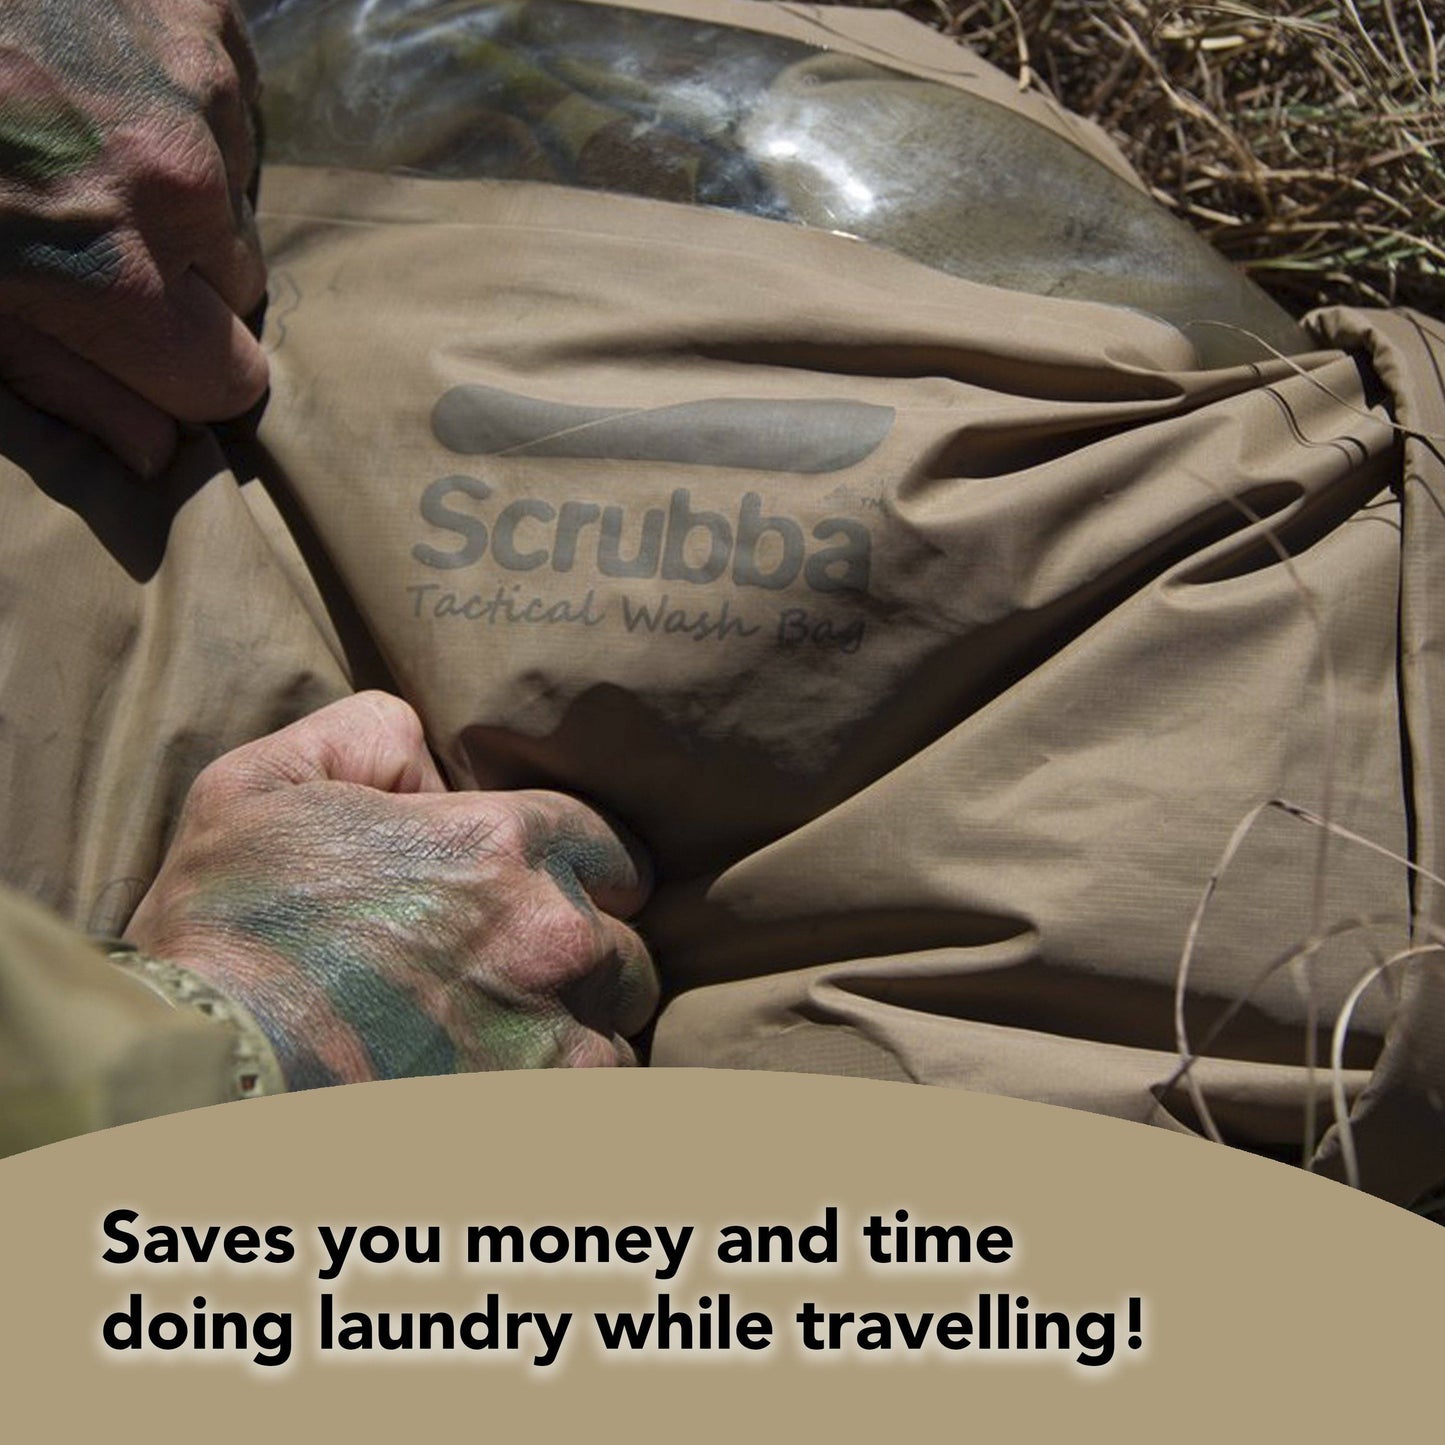 Scrubba Tactical Wash Bag - The Scrubba Wash Bag